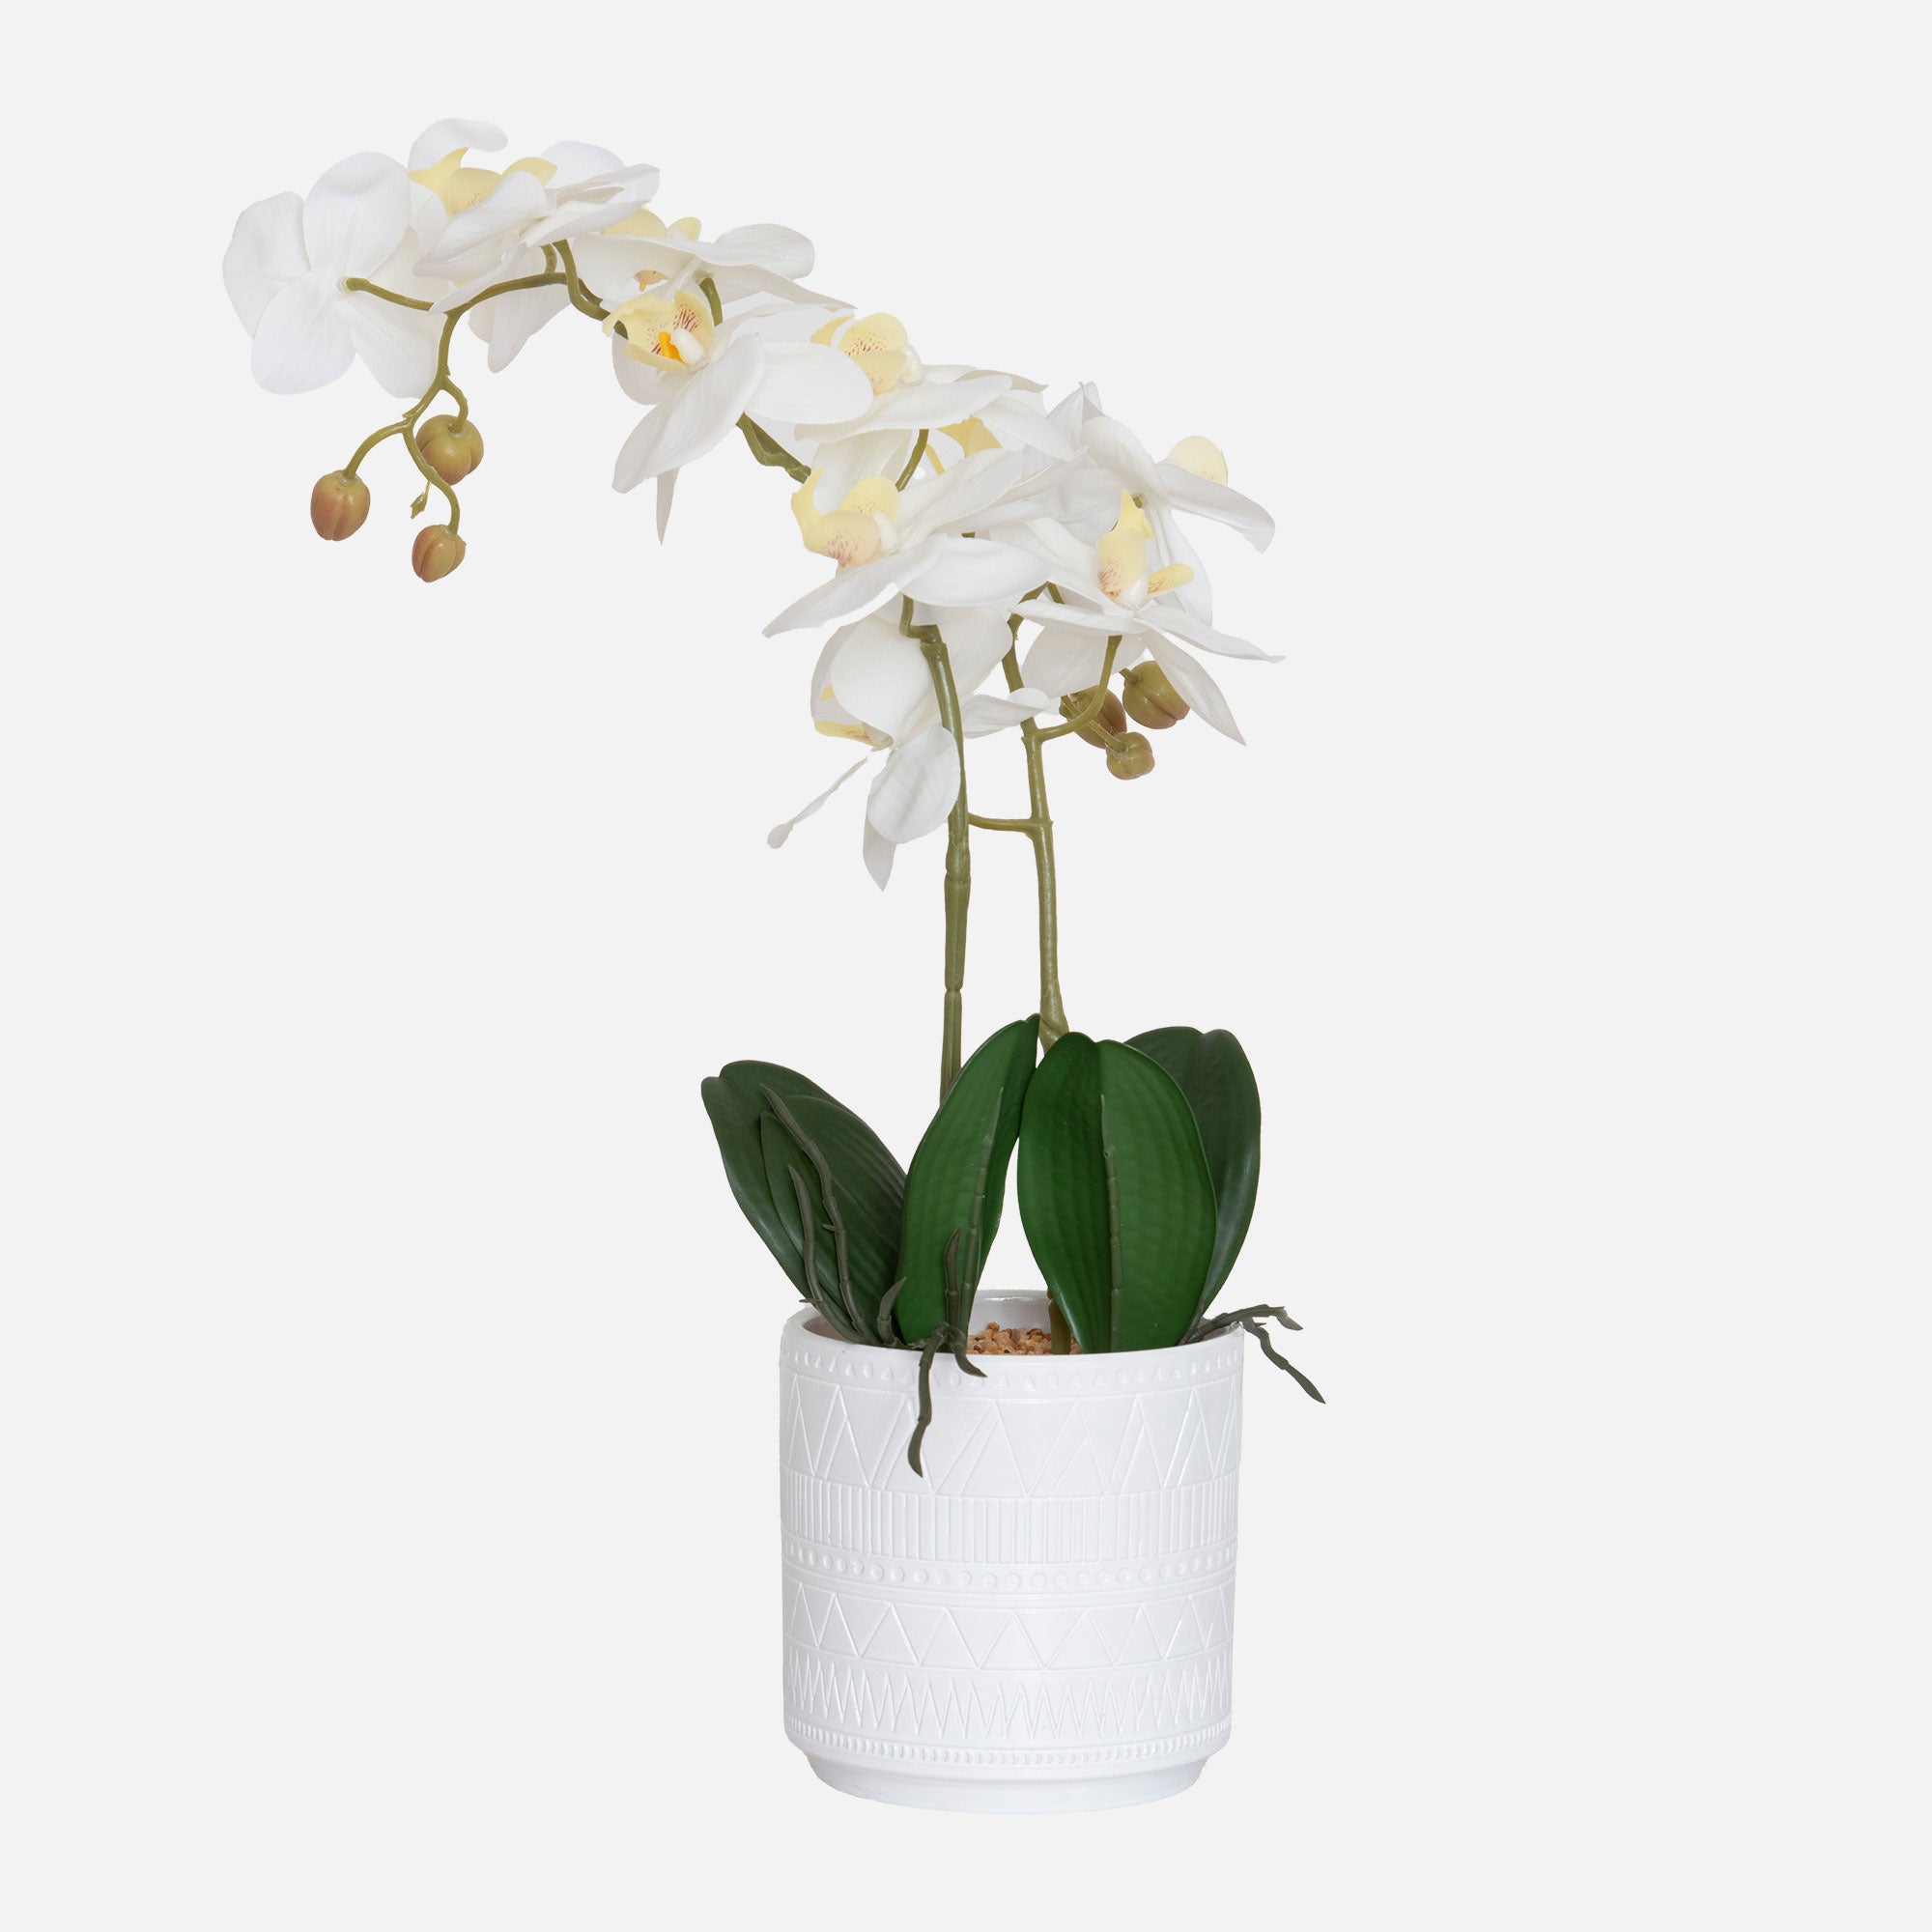 Orchid 2 Stem Arrangement - White in Ceramic Pot